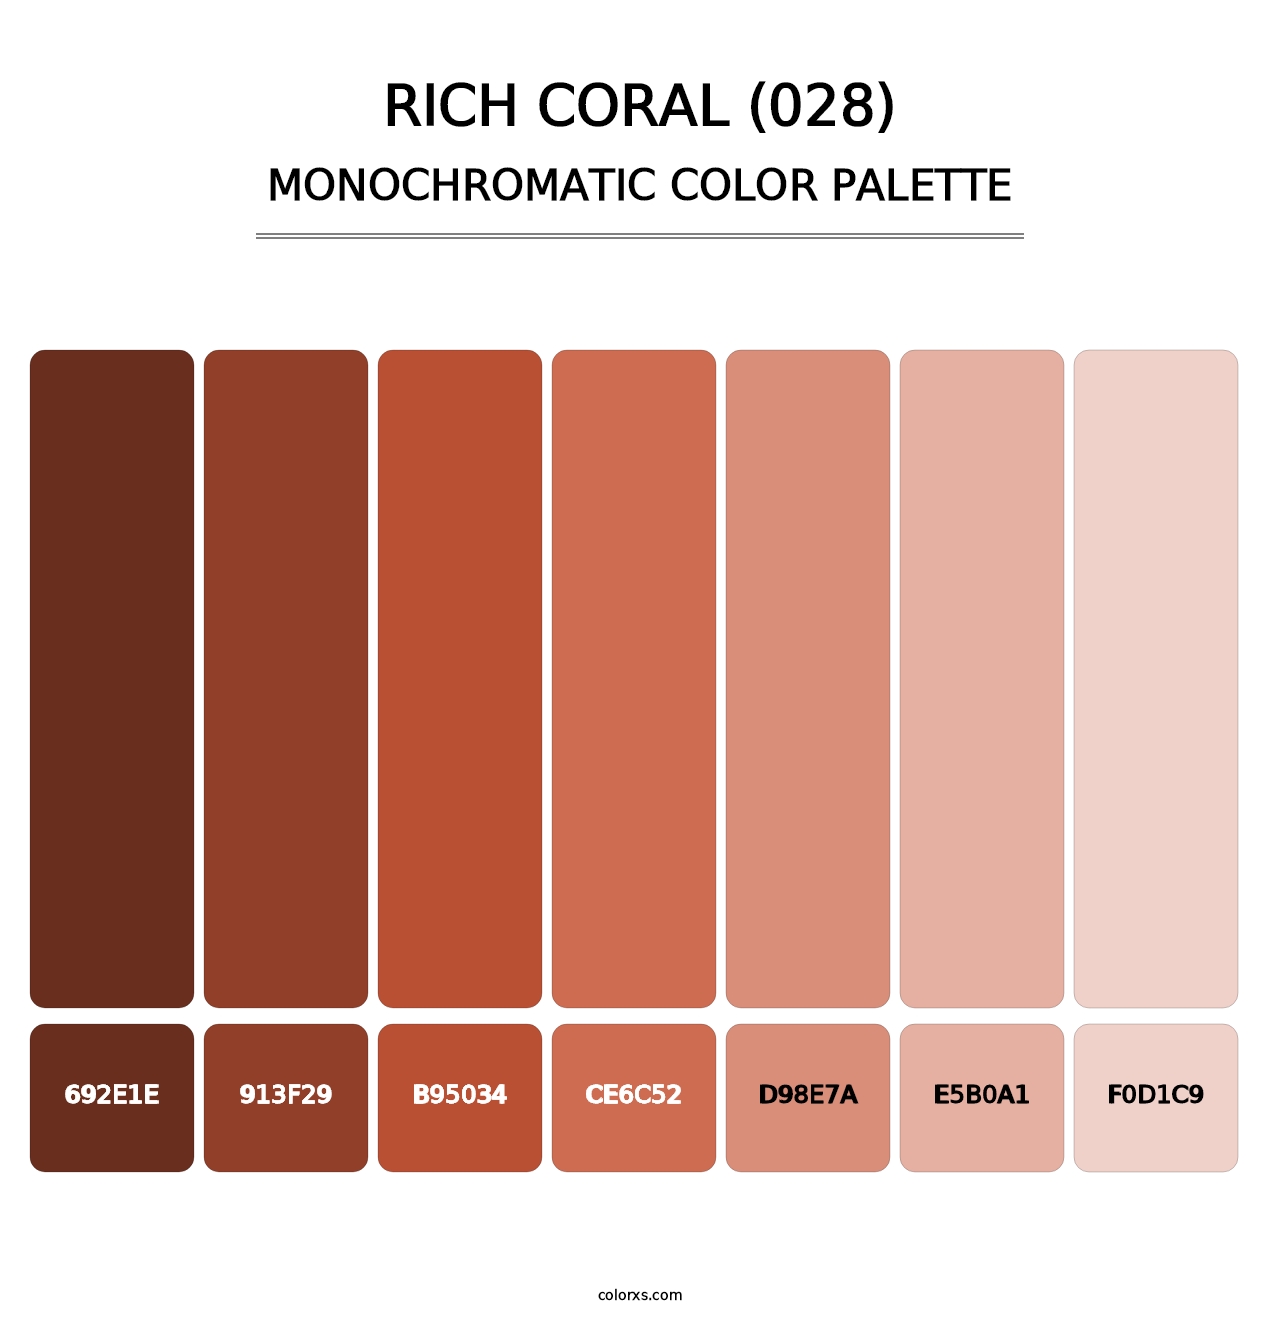 Rich Coral (028) - Monochromatic Color Palette